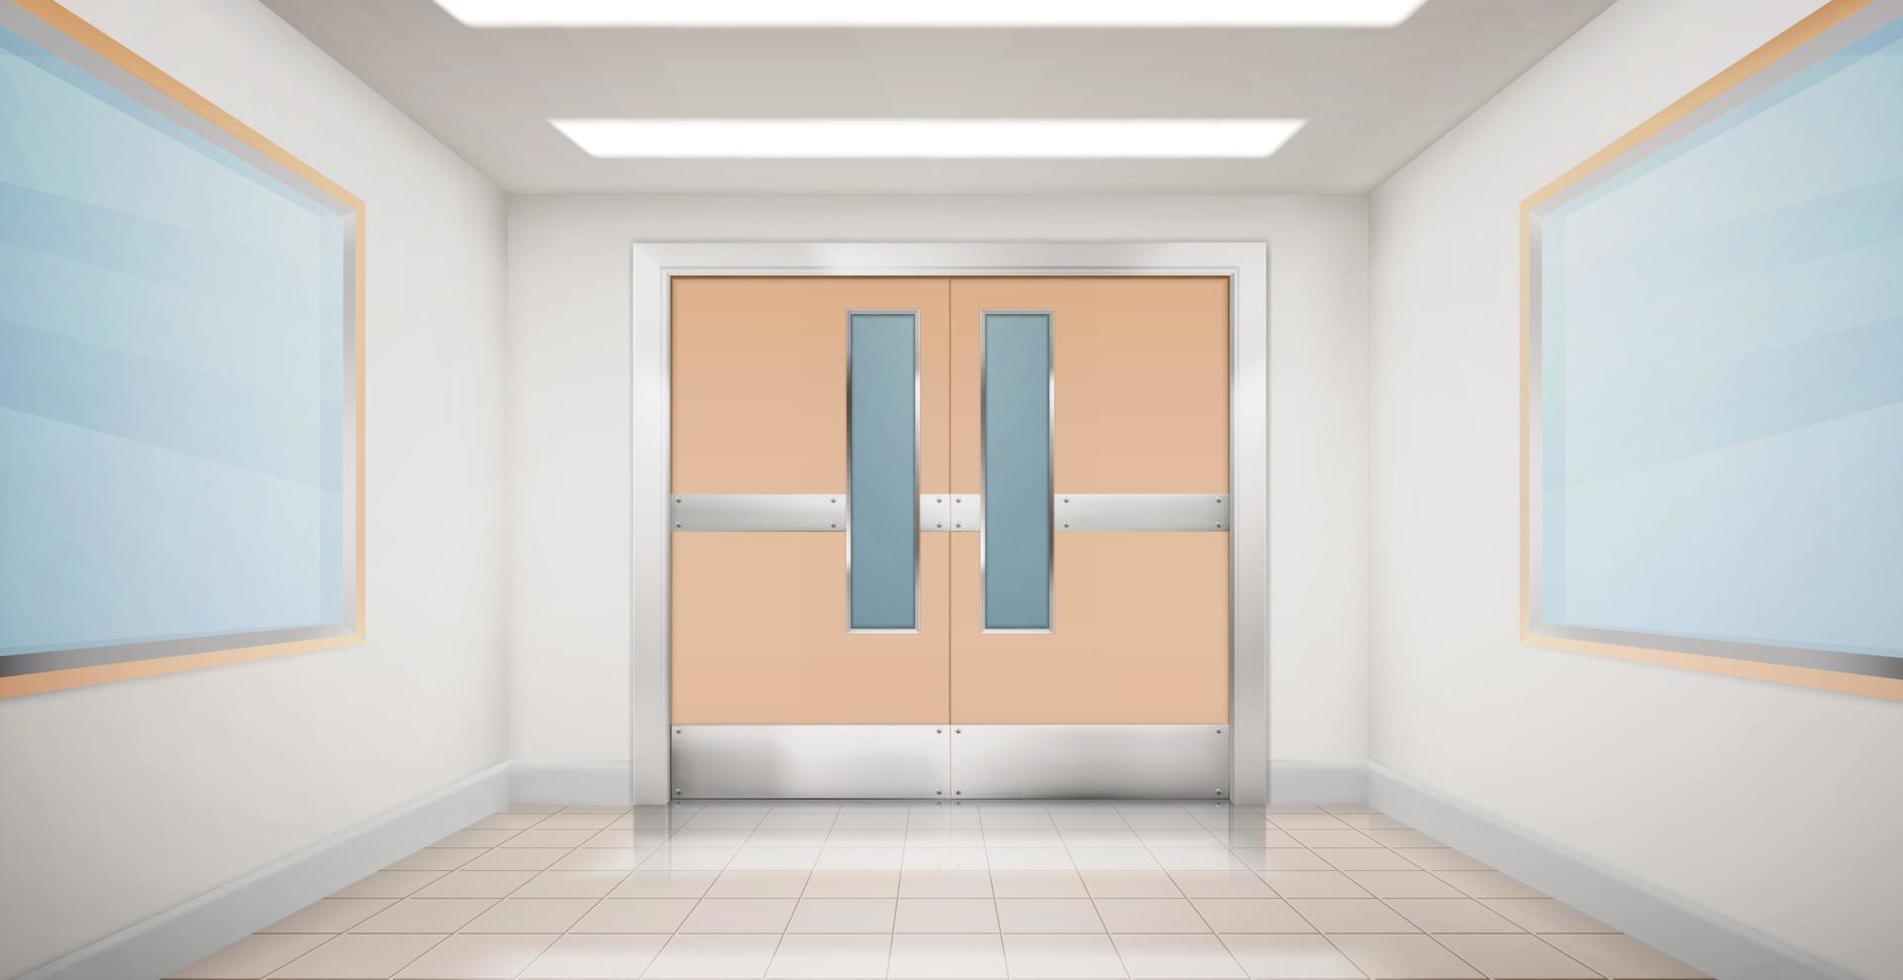 Doors in hallway of hospital, laboratory or school vector